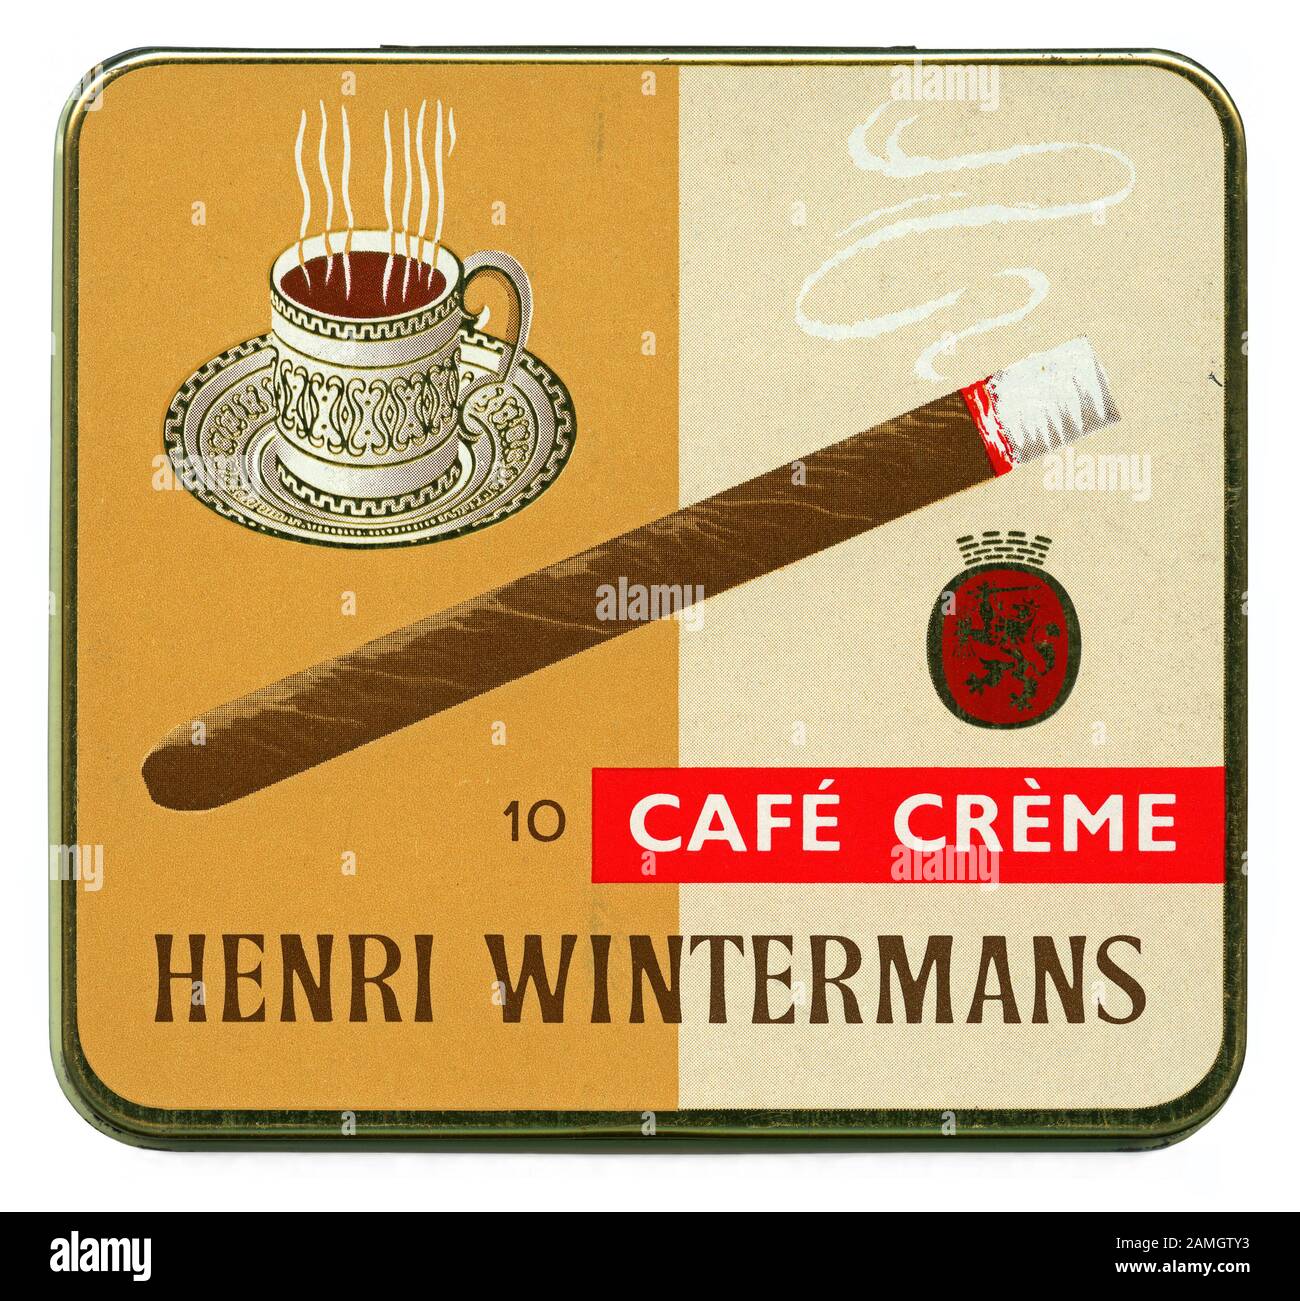 Vintage de estaño 10 Henri Winterman's Café Crème cigarros puros (Miniatura) c.1970. Incluye una ilustración de una taza de café. Hermanos y Henri Wintermans Sjaak estableció un cigarro haciendo negocios en los Países Bajos en 1904. Henri dejó de establecer su propio negocio en 1934. Después de la II Guerra Mundial, Gran Bretaña se convirtió en el mayor mercado de ventas. El café crème cigarillo cigarro (Miniatura) fue introducido en la década de 1960. Henri Wintermans fue vendido a British American Tobacco (BAT) en 1966 y ahora Henri Wintermans bigest es la venta de cigarros de marca en el mundo. Foto de stock